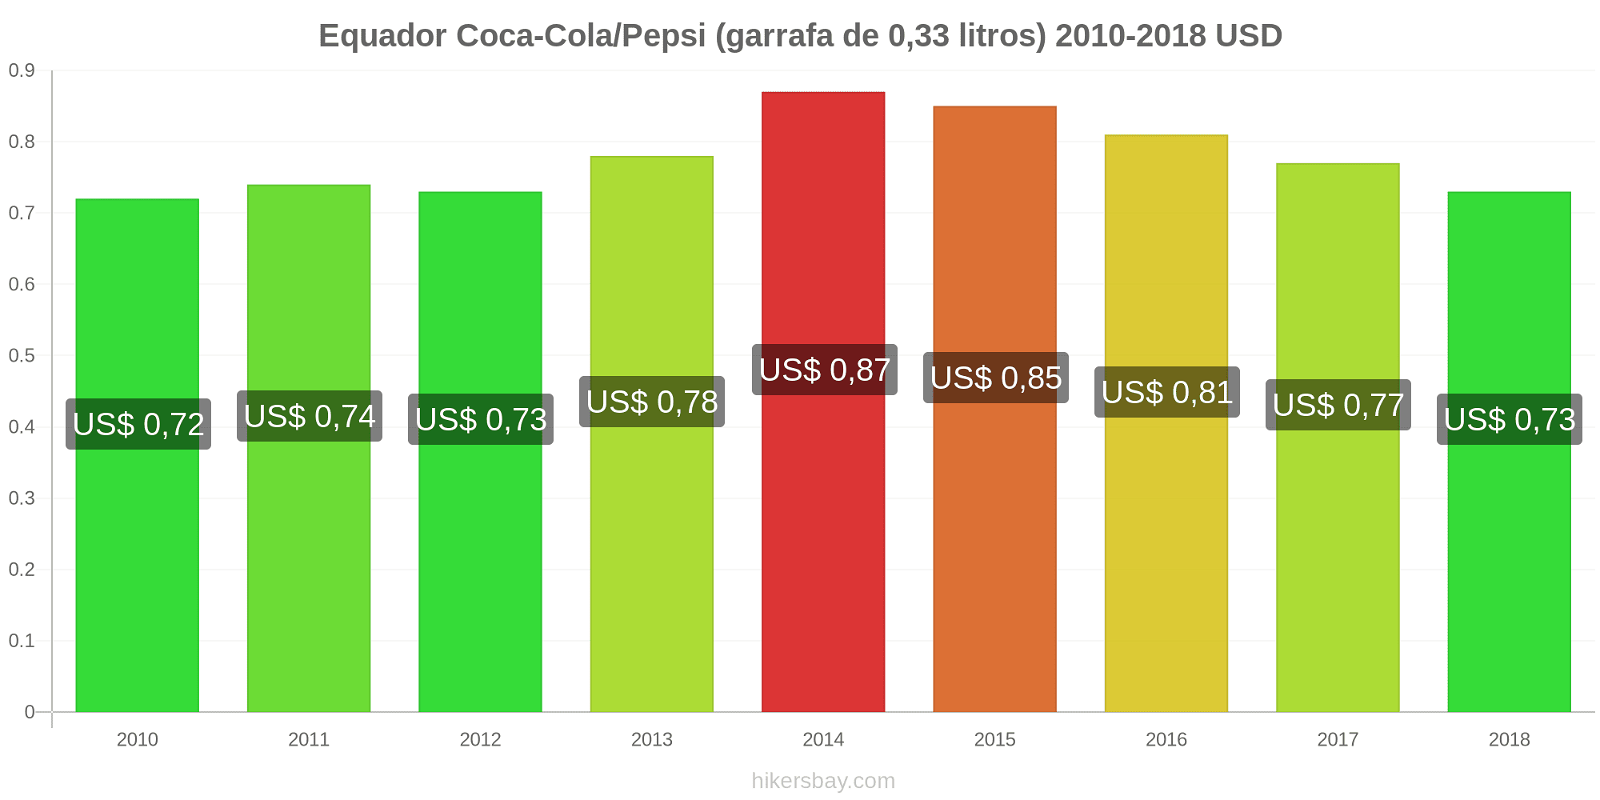 Equador mudanças de preços Coca-Cola/Pepsi (garrafa de 0.33 litros) hikersbay.com